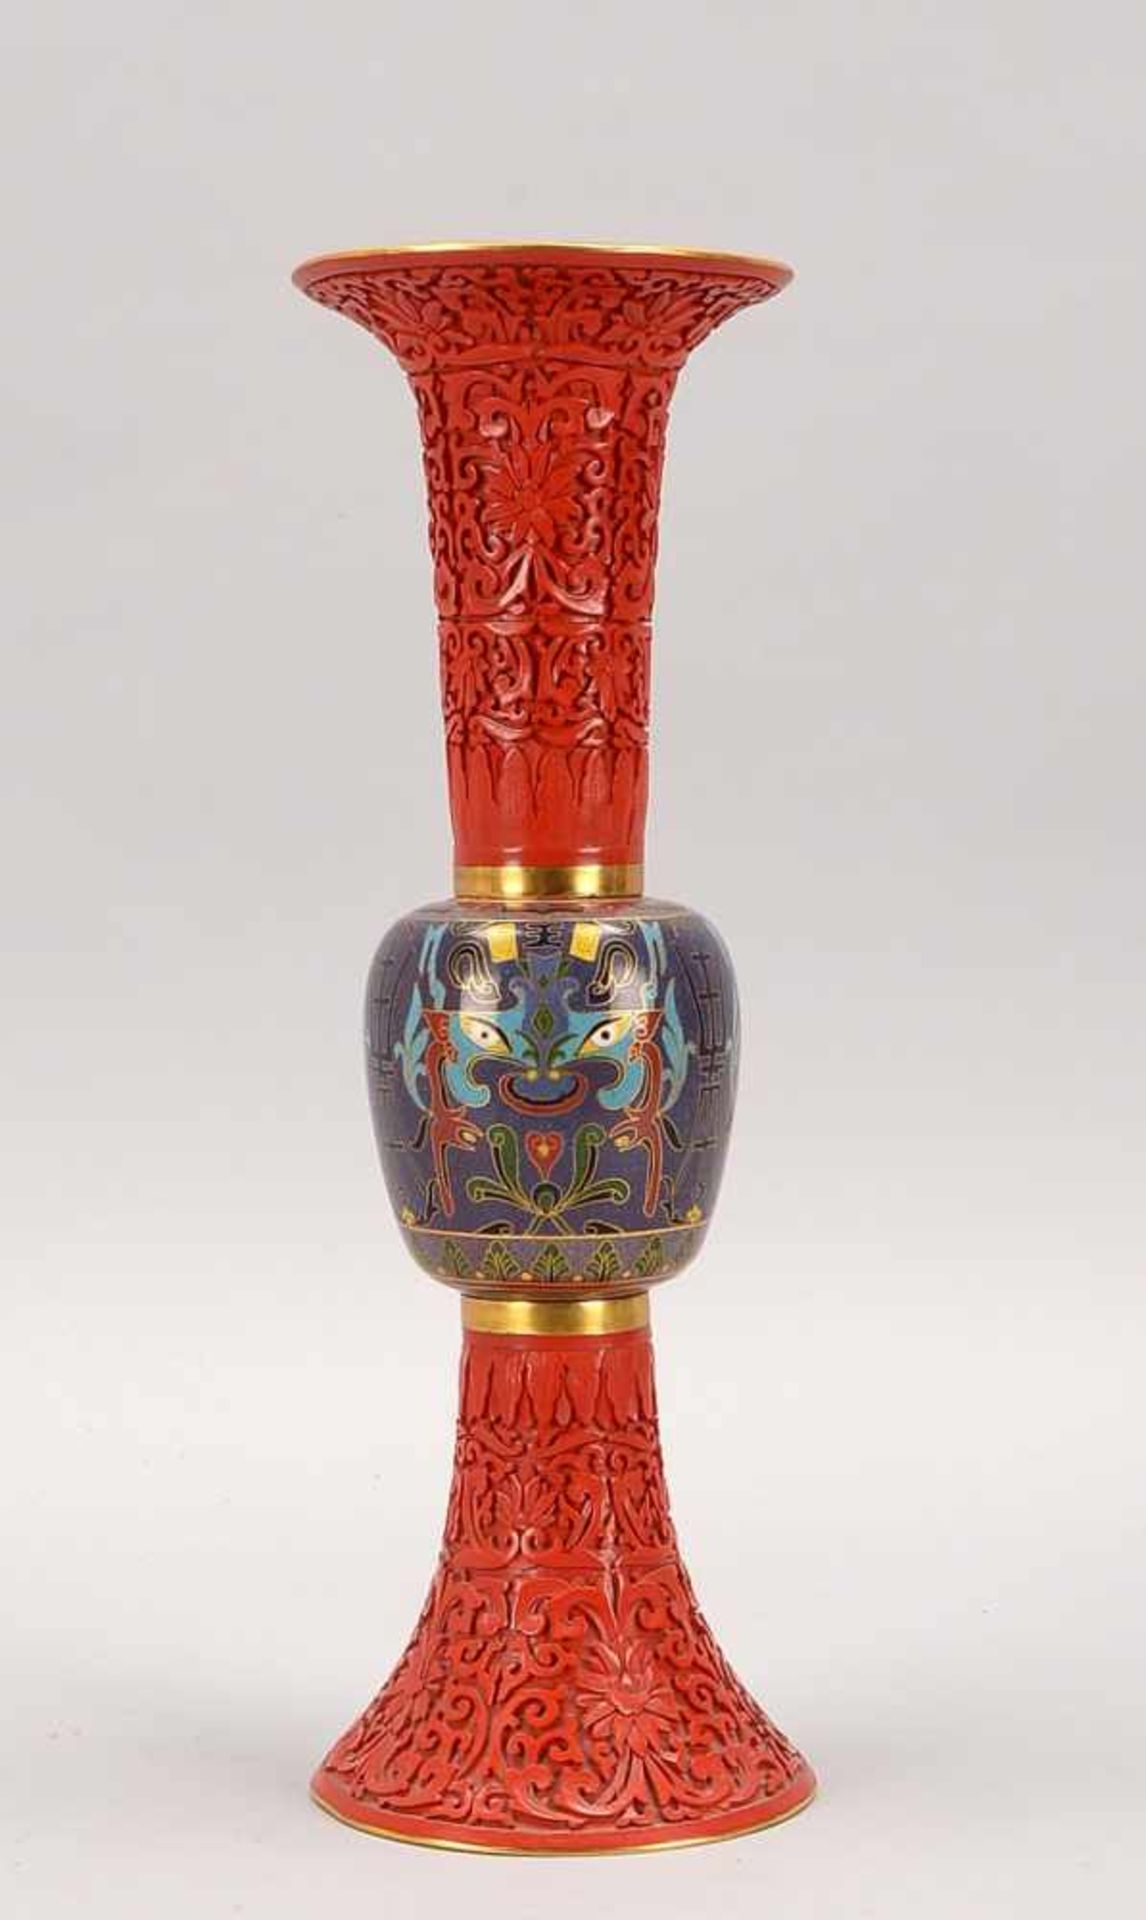 Vase, China, geschnittenes Rotlack-Dekor auf Messing-Grund, mittig Cloisonné-Nodus; Höhe 39 cm